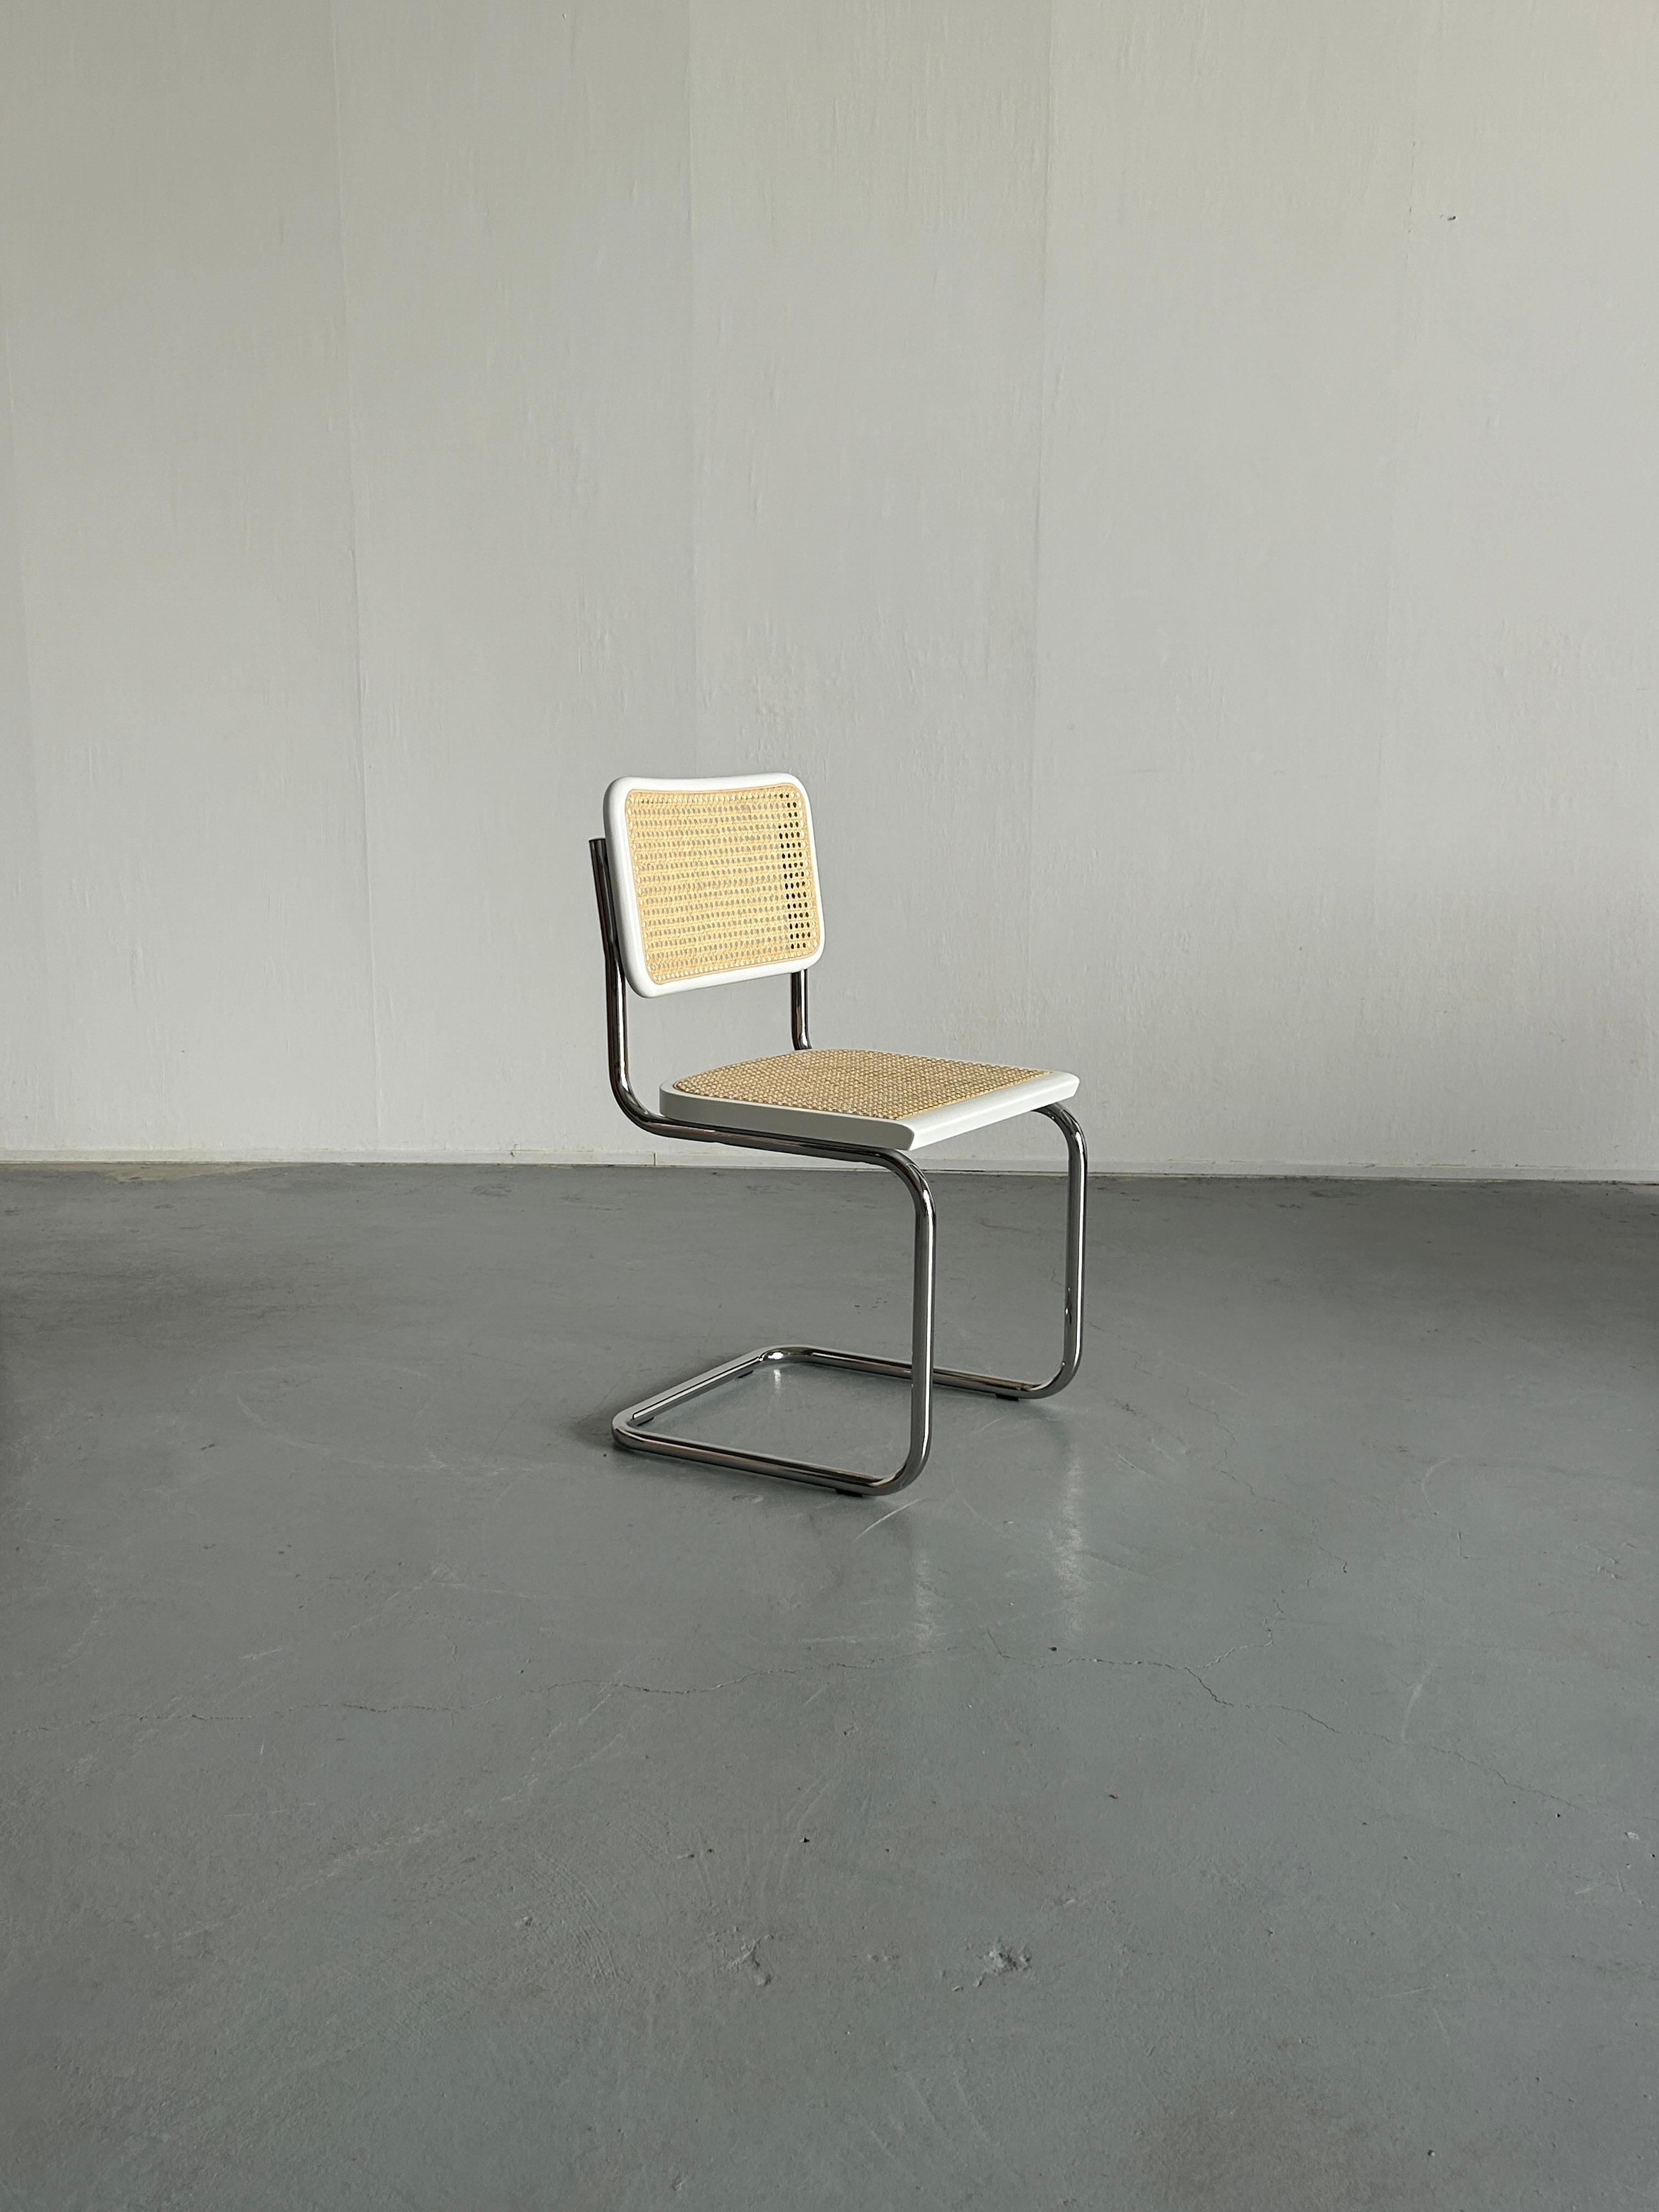 Les chaises luge classiques en tube d'acier chromé du Bauhaus, modèle B32 ou communément appelées Cesca, conçues par Marcel Breuer.

Production italienne inconnue, circa 2000-2003. Il ne s'agit pas d'une production originale de Knoll.
A l'origine,